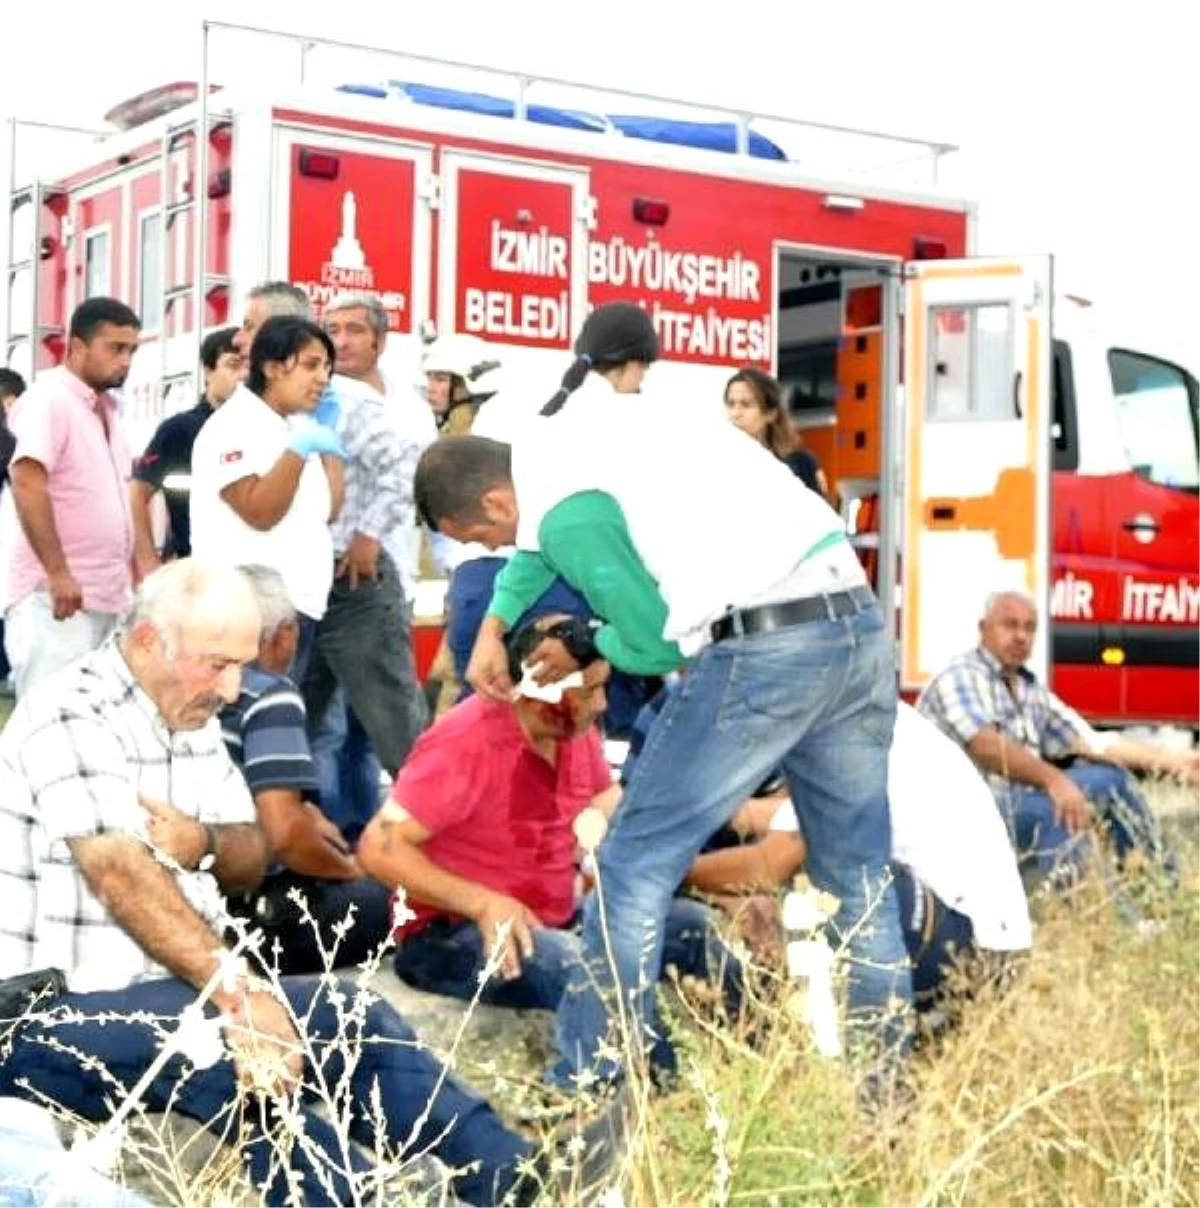 Jandarma Aracıyla Belediye Servisi Çarpıştı: 12 Yaralı